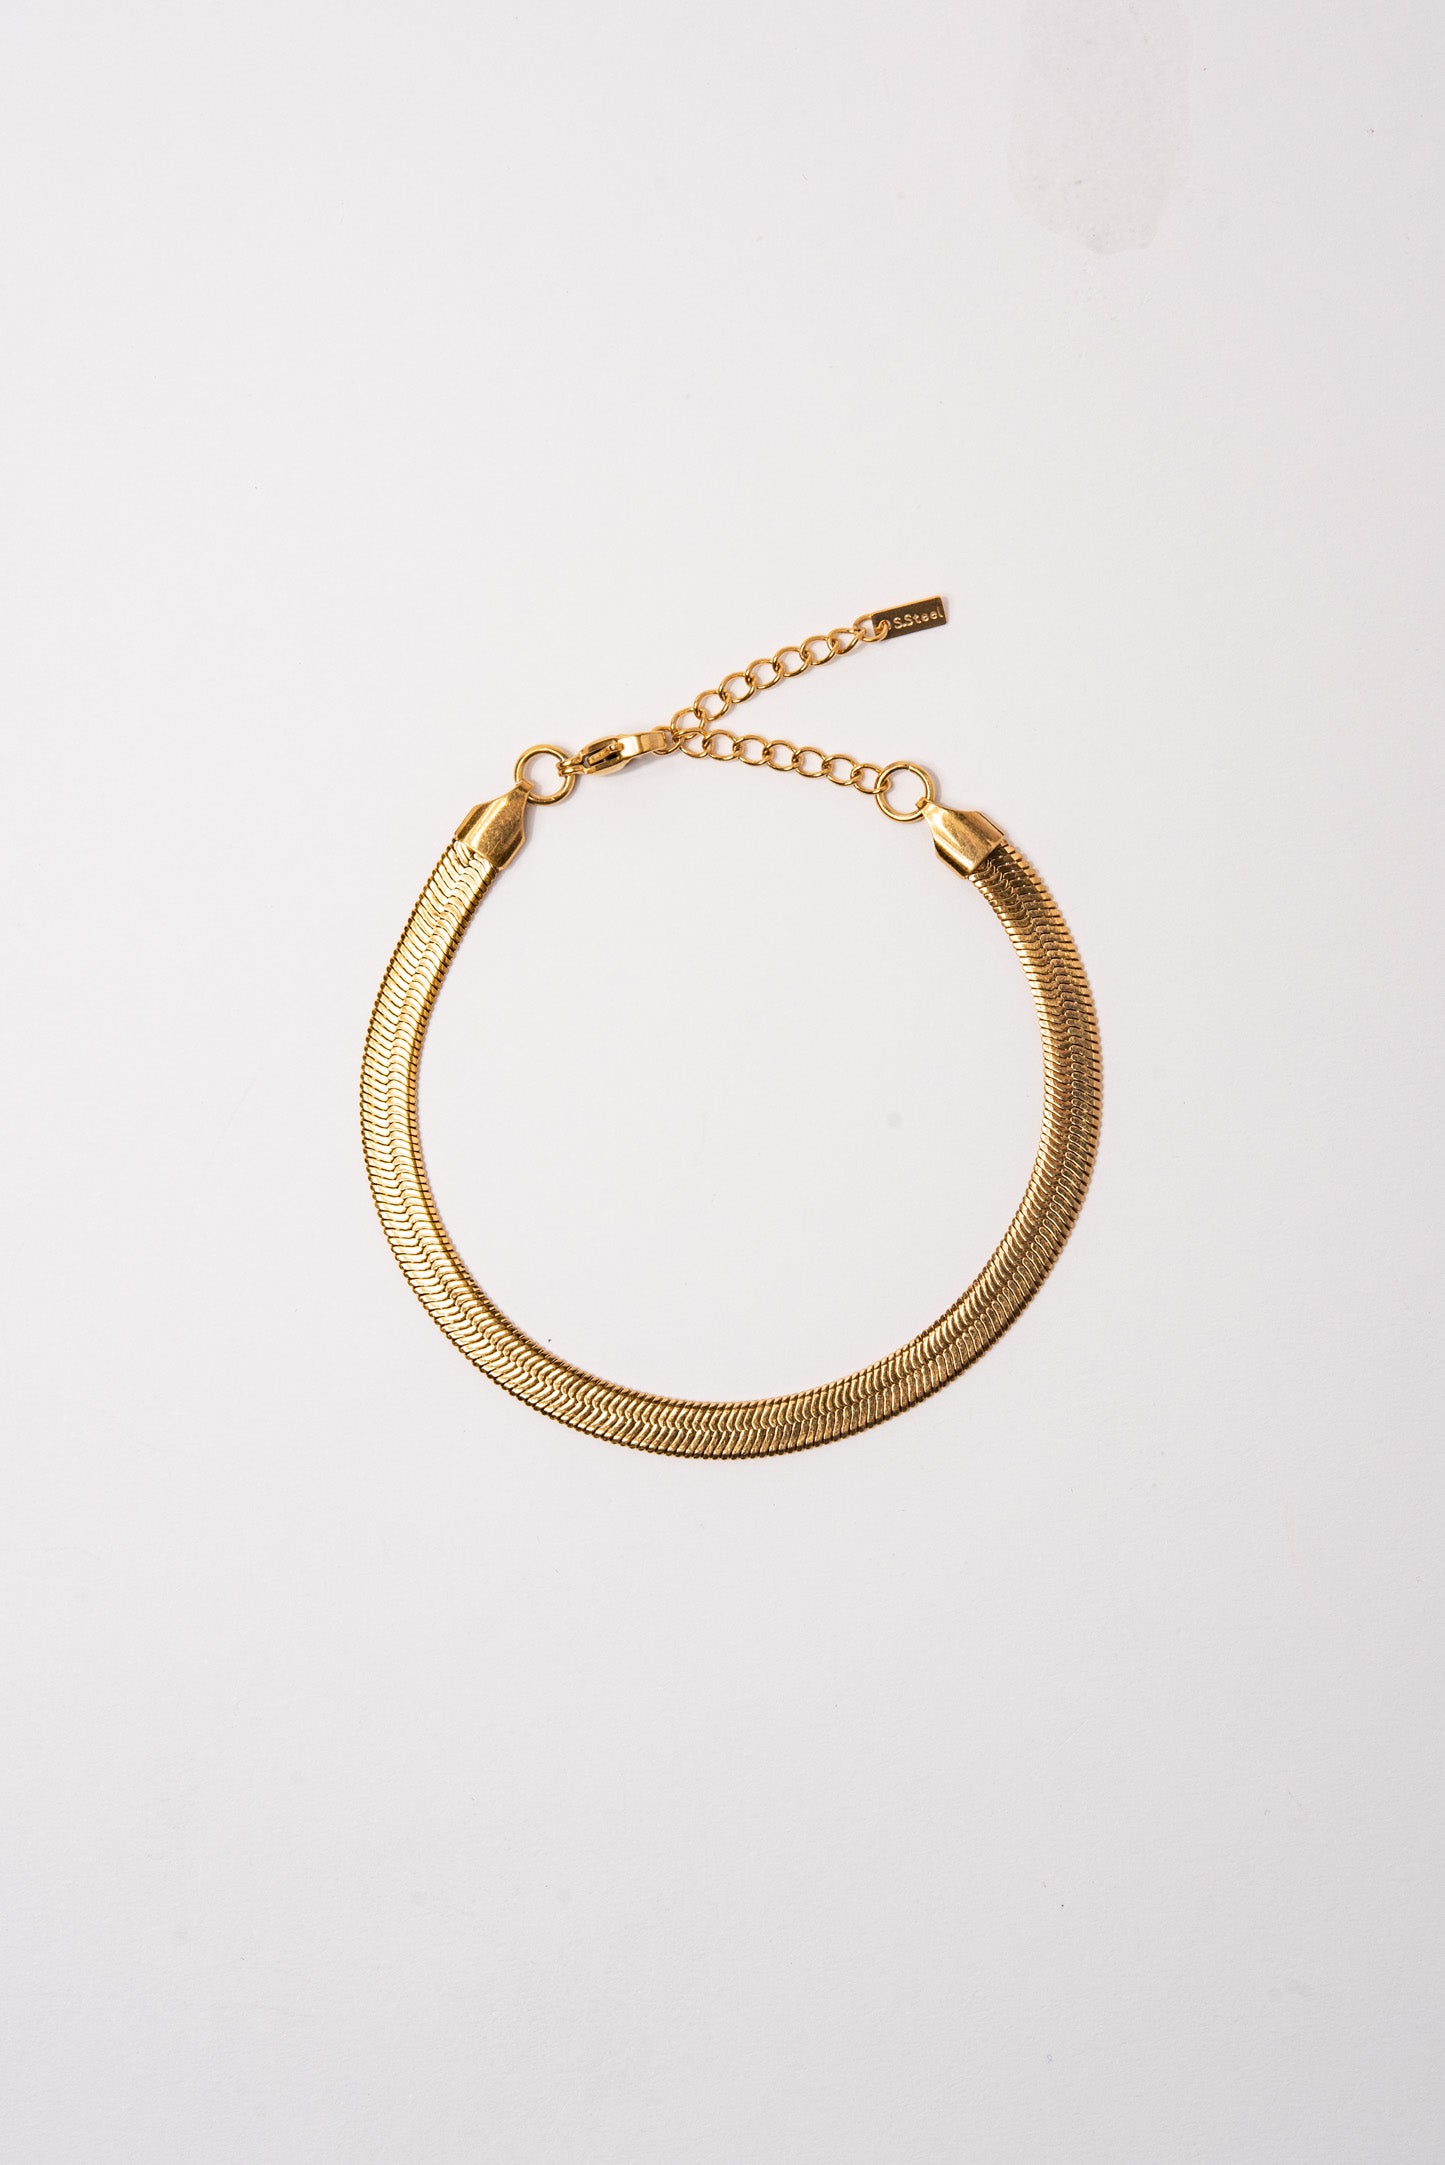 Stainless Steel Herringbone Chain Bracelet - Gold